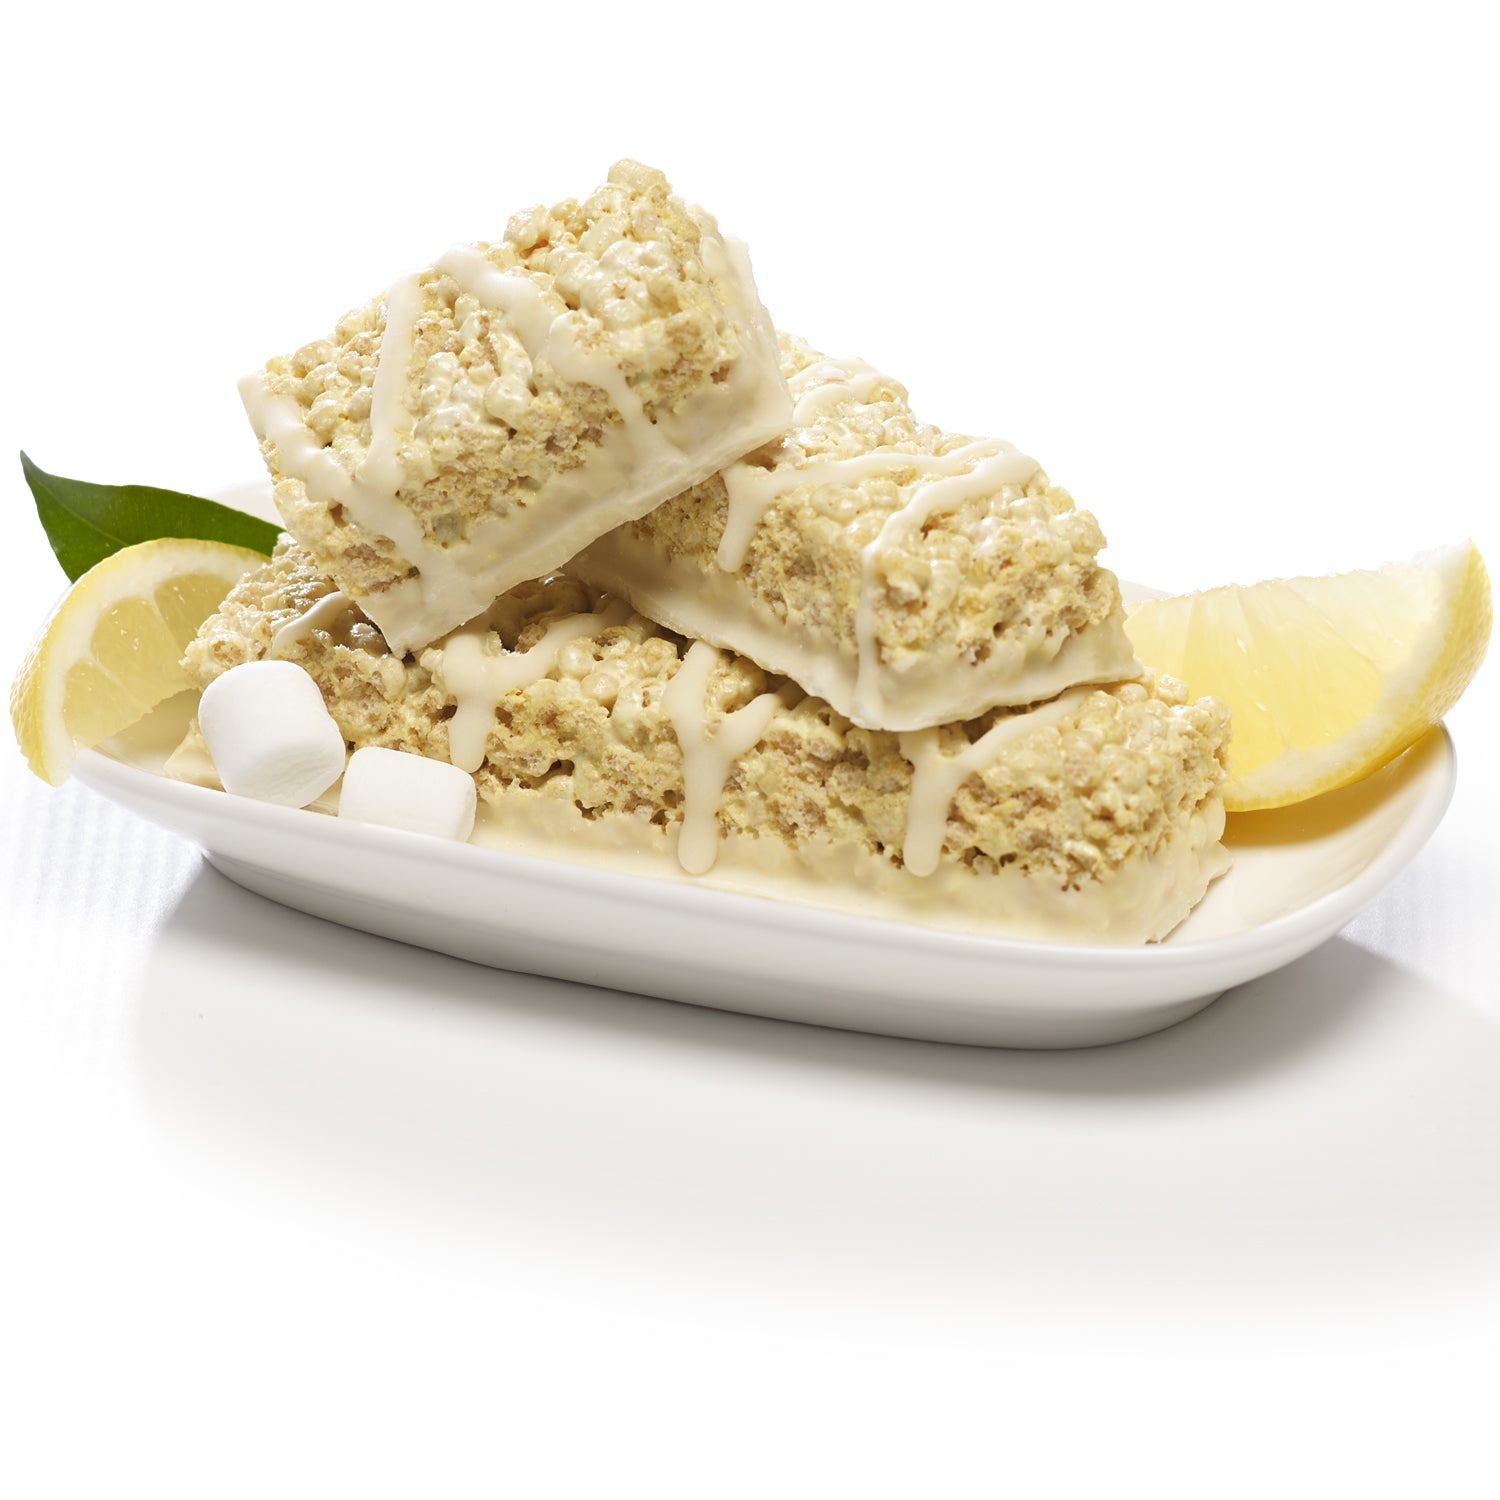 Inspire 15g Protein & Fiber Bars by Bariatric Eating - Fluffy Lemon Crisp